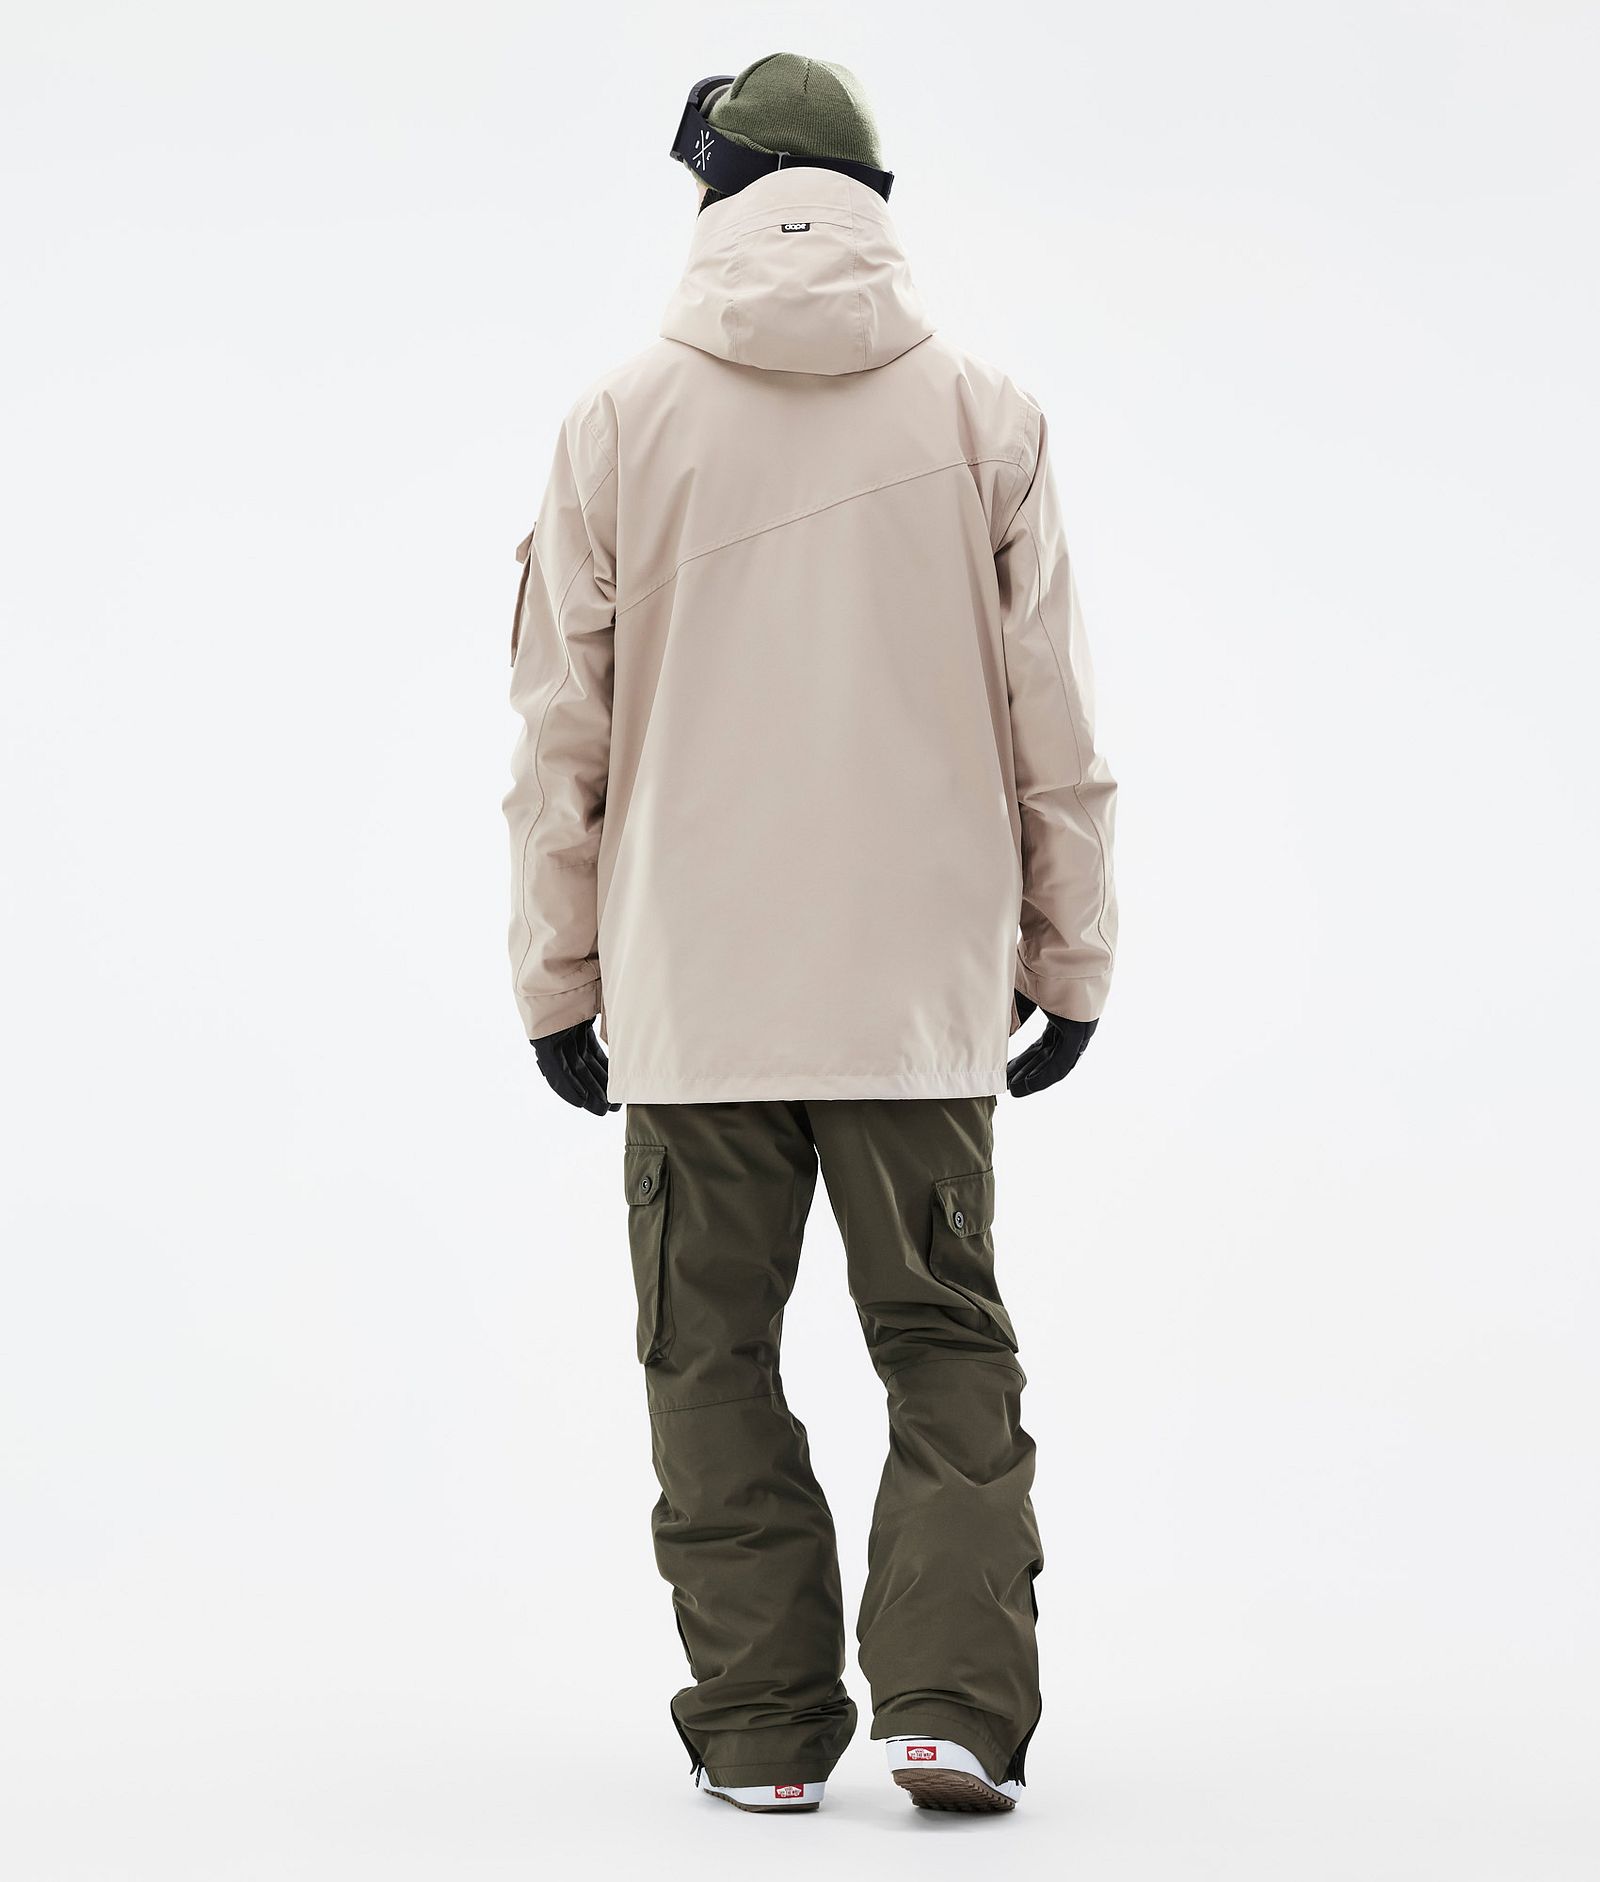 Adept Outfit Snowboardowy Mężczyźni Sand/Olive Green